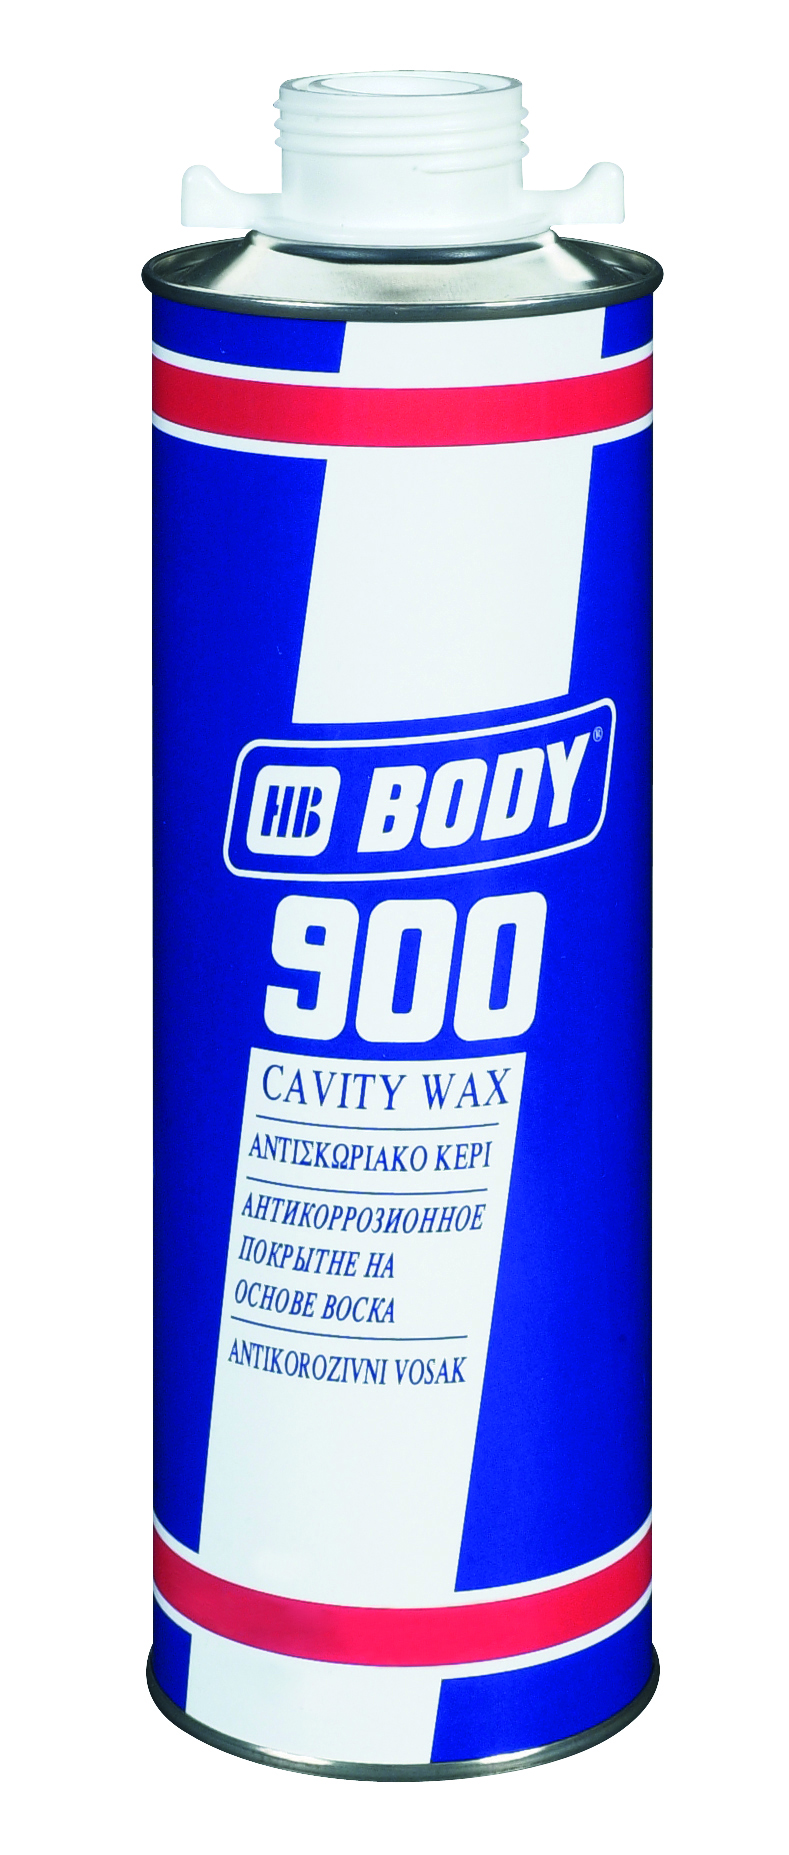 HB BODY Body 900 Cavity Wax Priesvitná,400ml